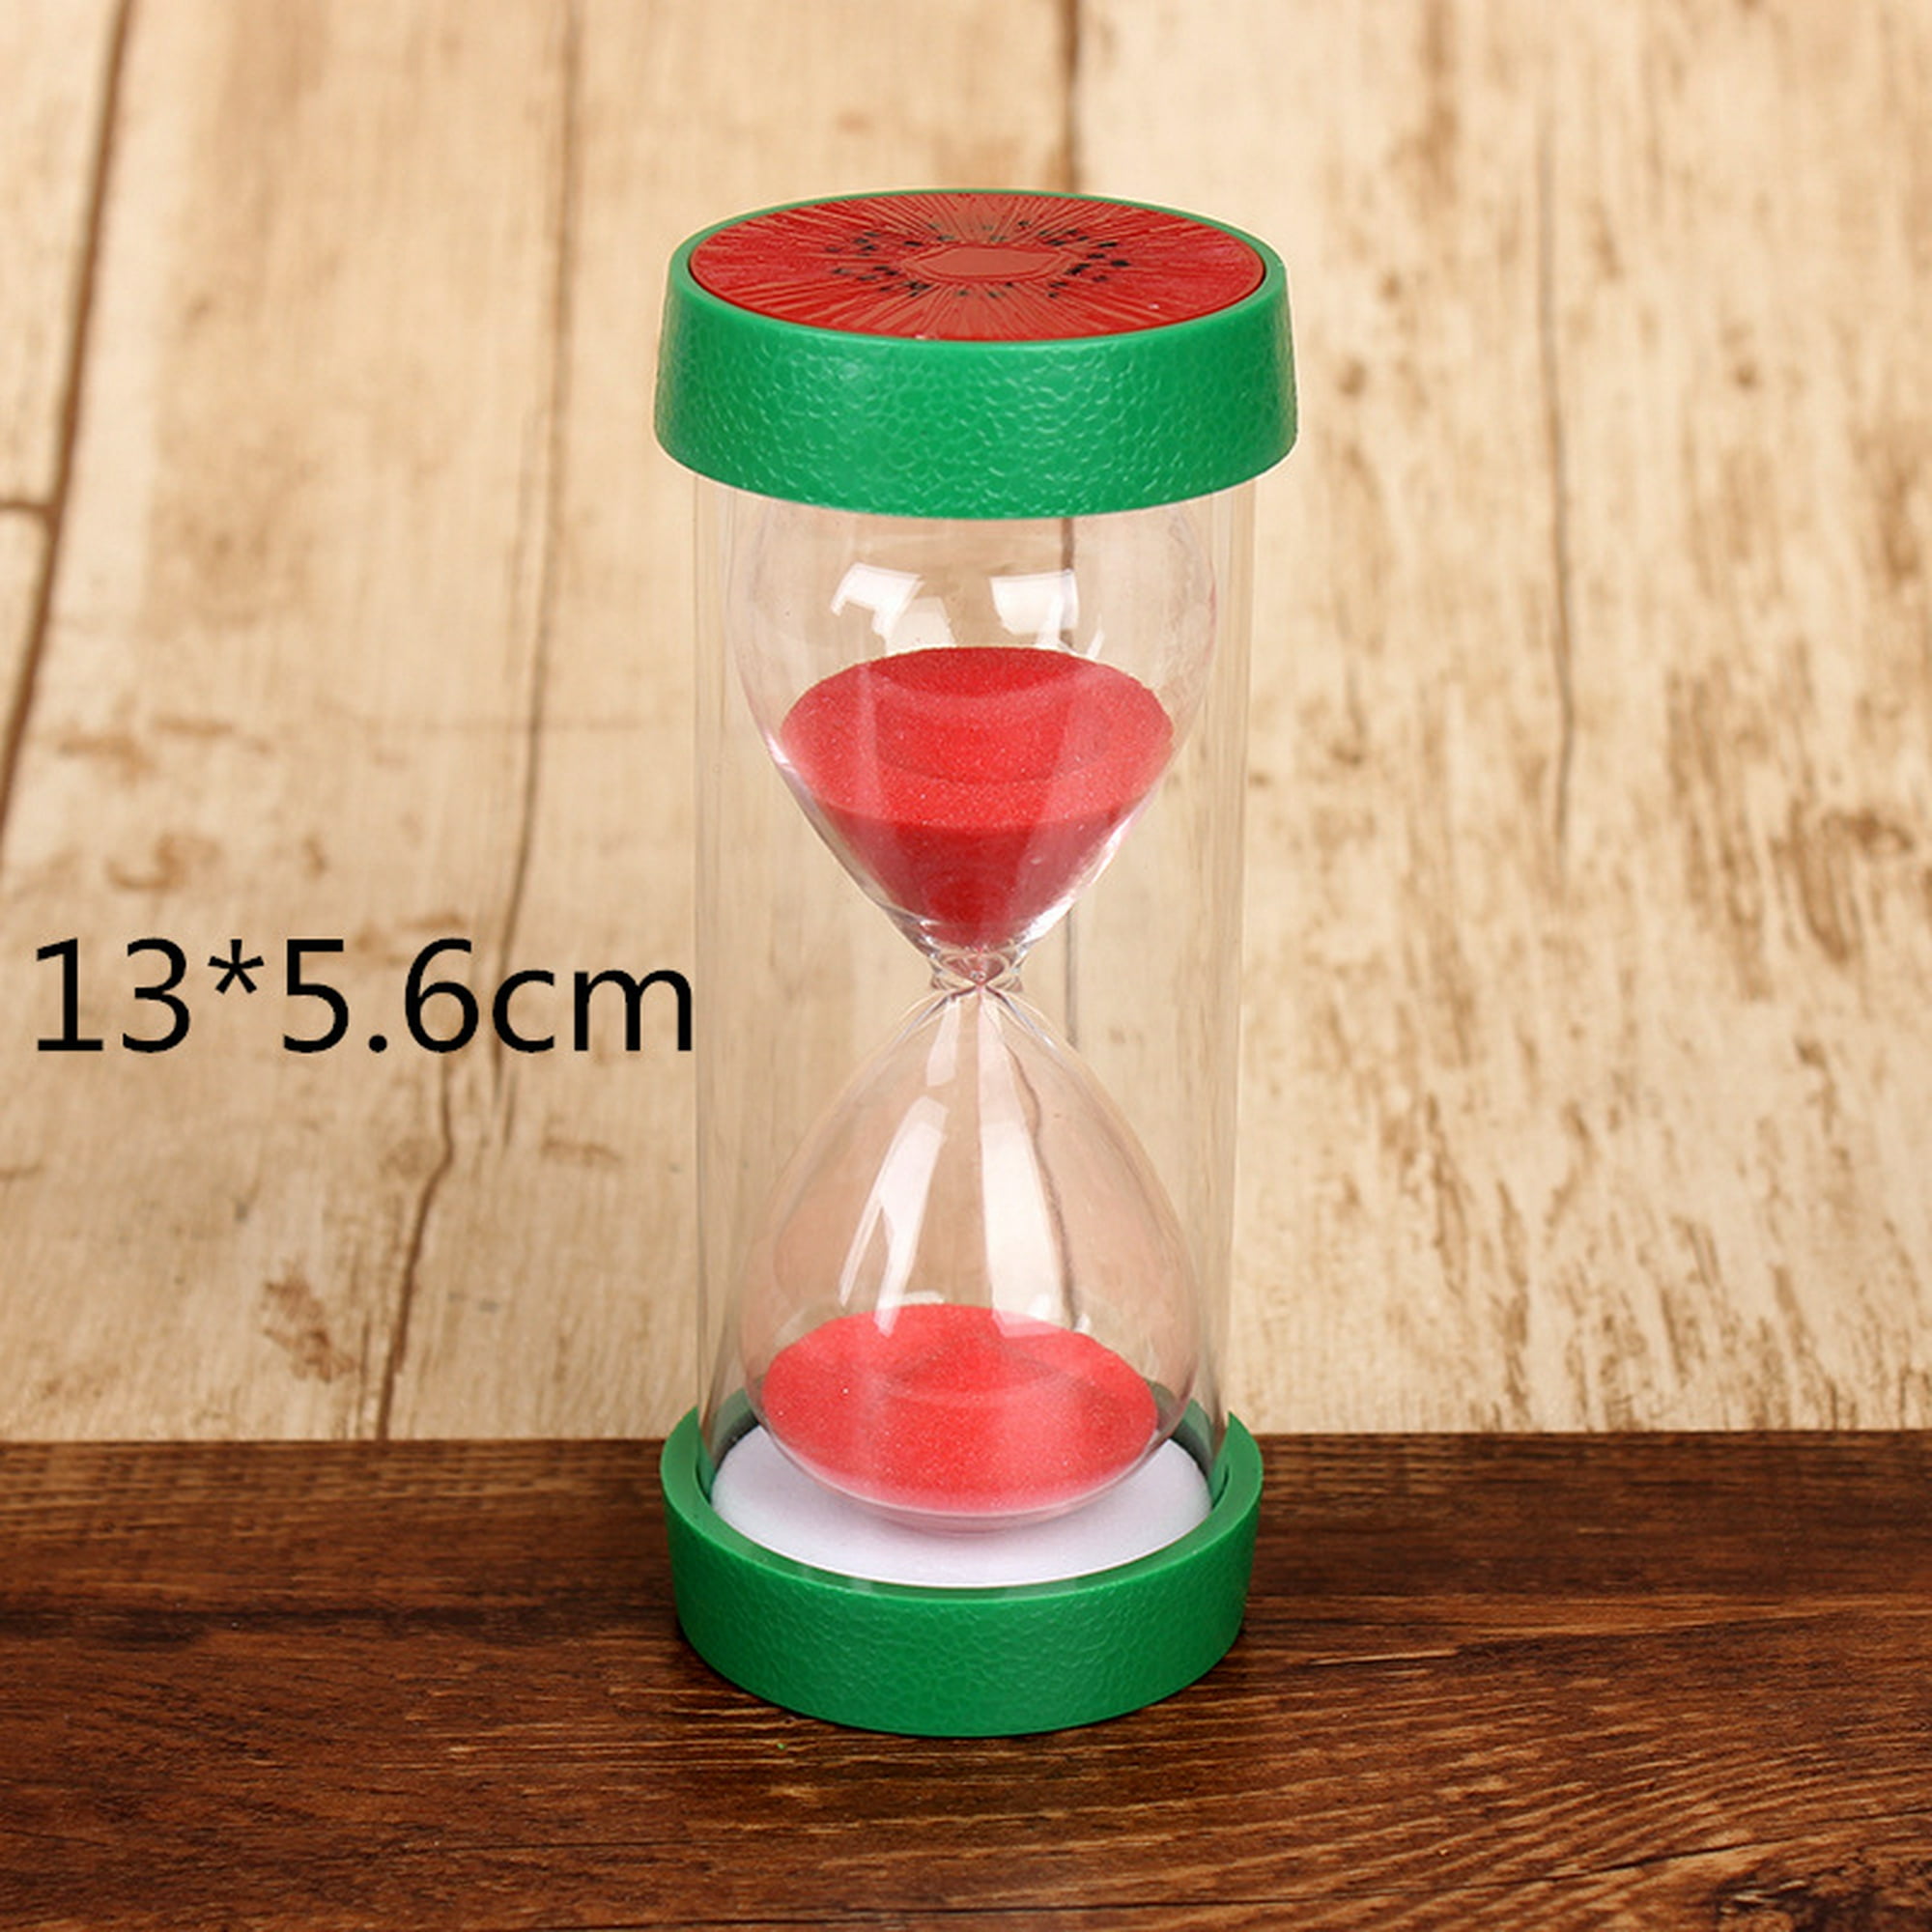 Temporizador de reloj de arena para niños Reloj de arena a prueba de caídas  (rojo) ZefeiWu 8390613842367